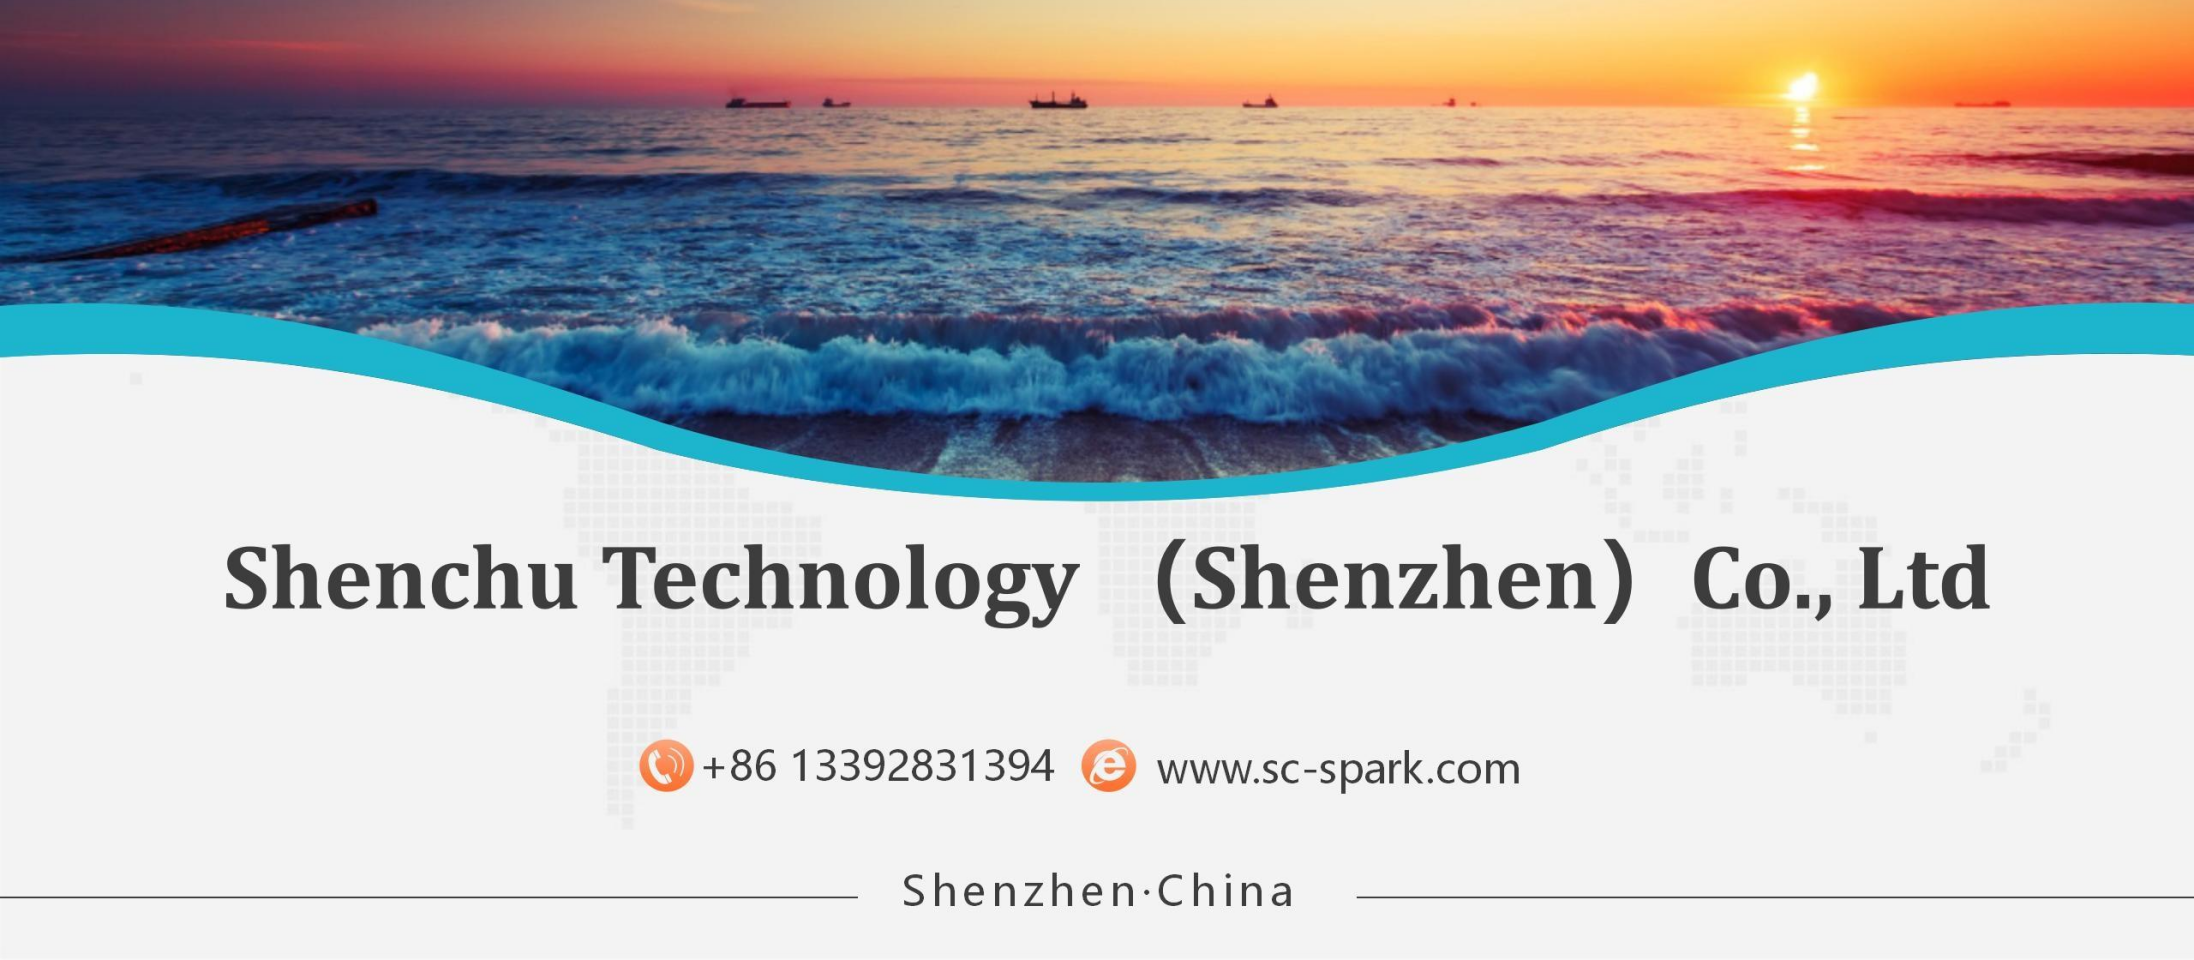 Shenchu Technology (Shenzhen) Co., Ltd